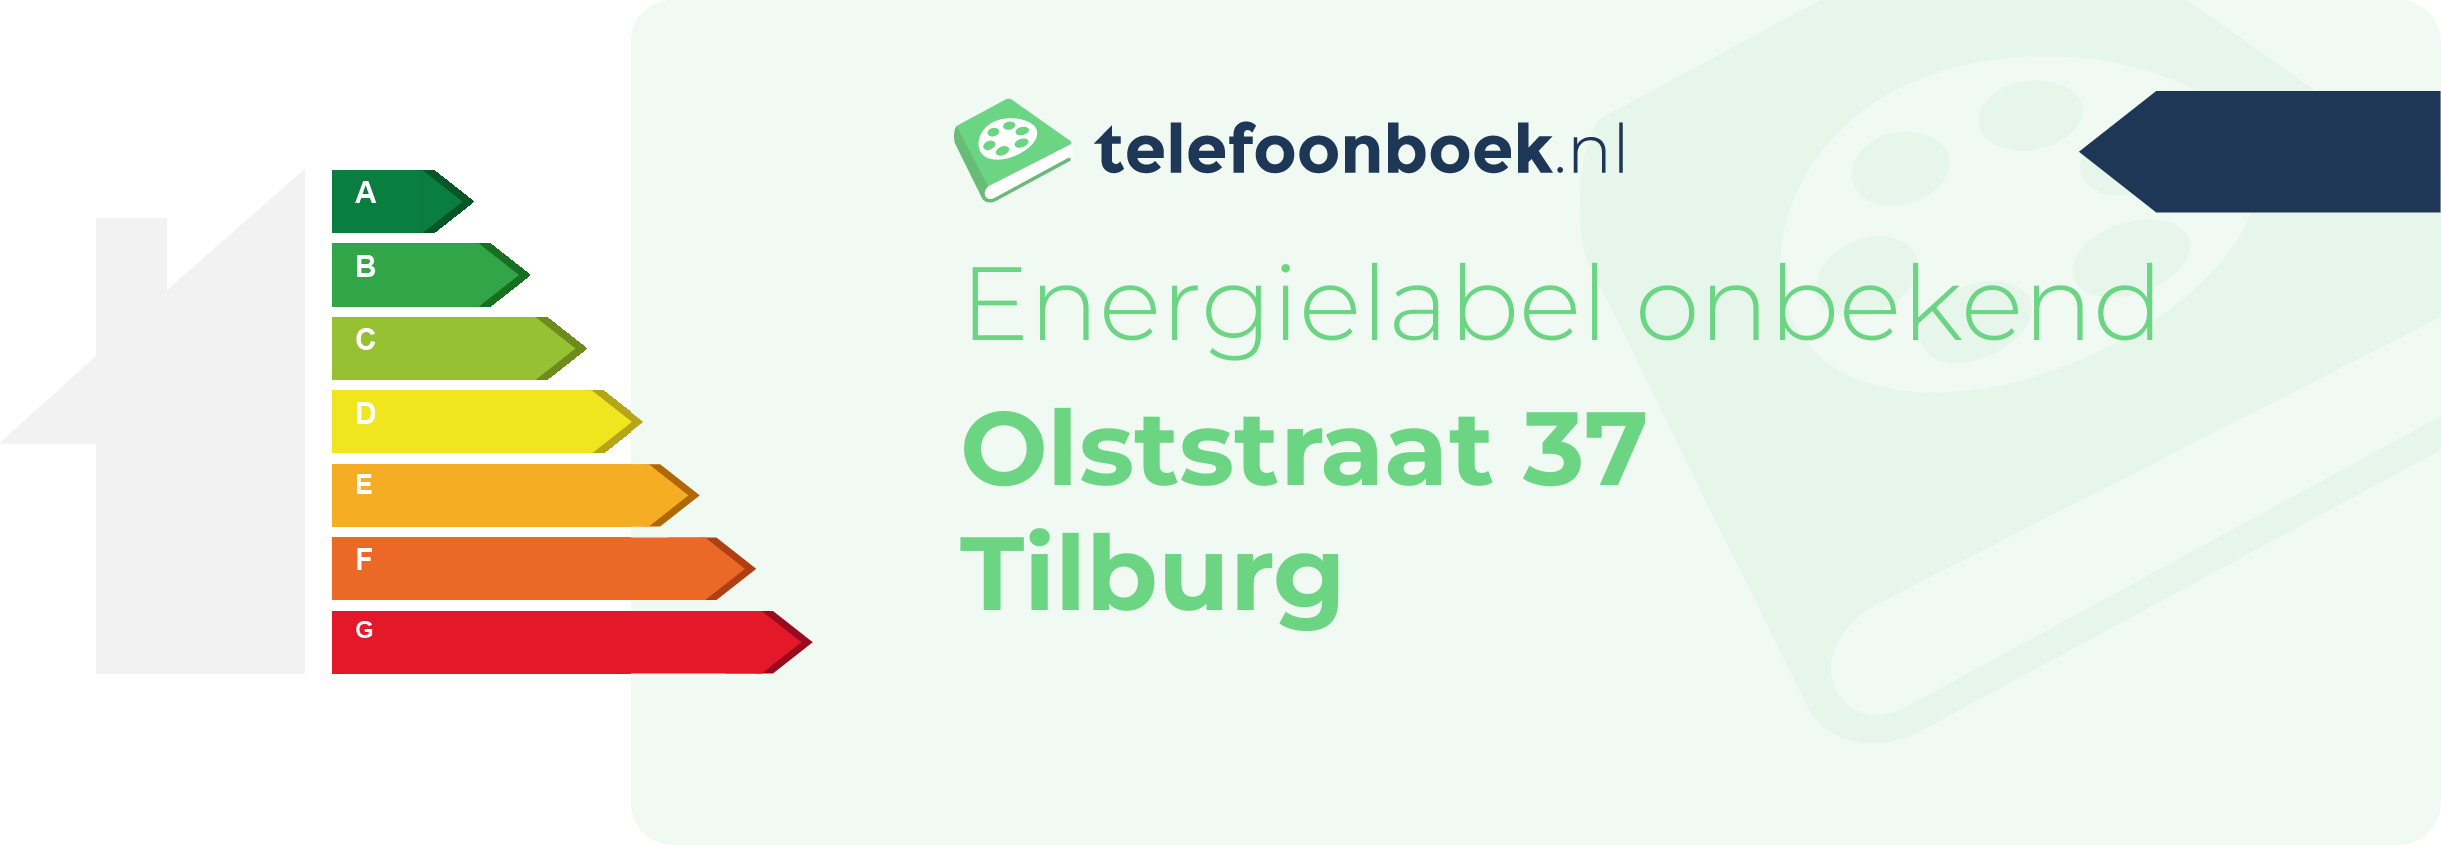 Energielabel Olststraat 37 Tilburg